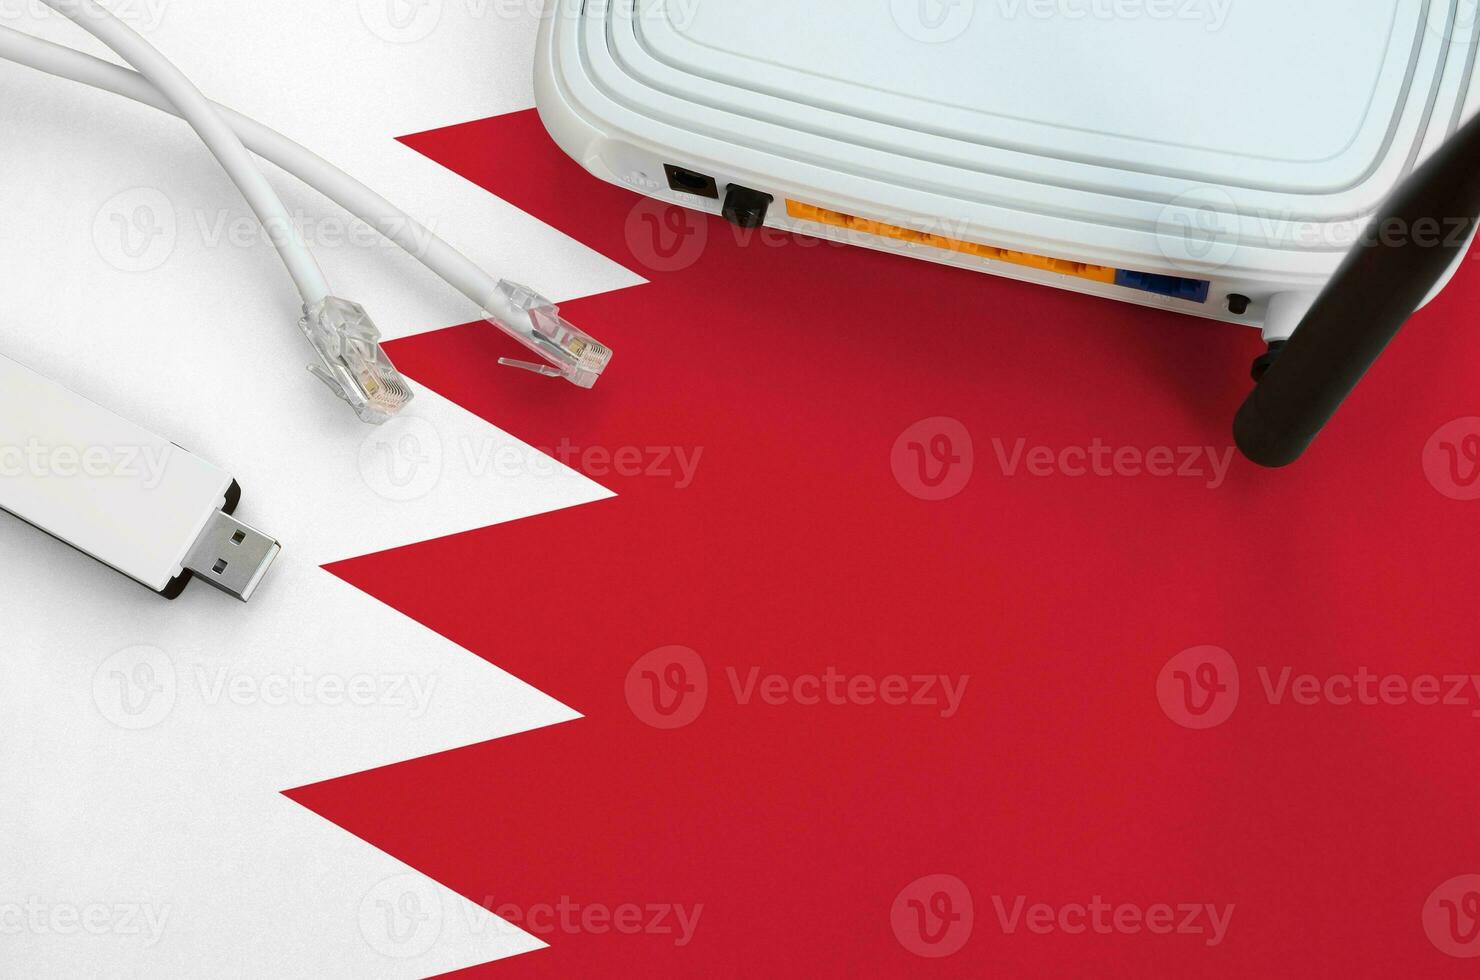 bahrain flagga avbildad på tabell med internet rj45 kabel, trådlös uSB wiFi adapter och router. internet förbindelse begrepp foto